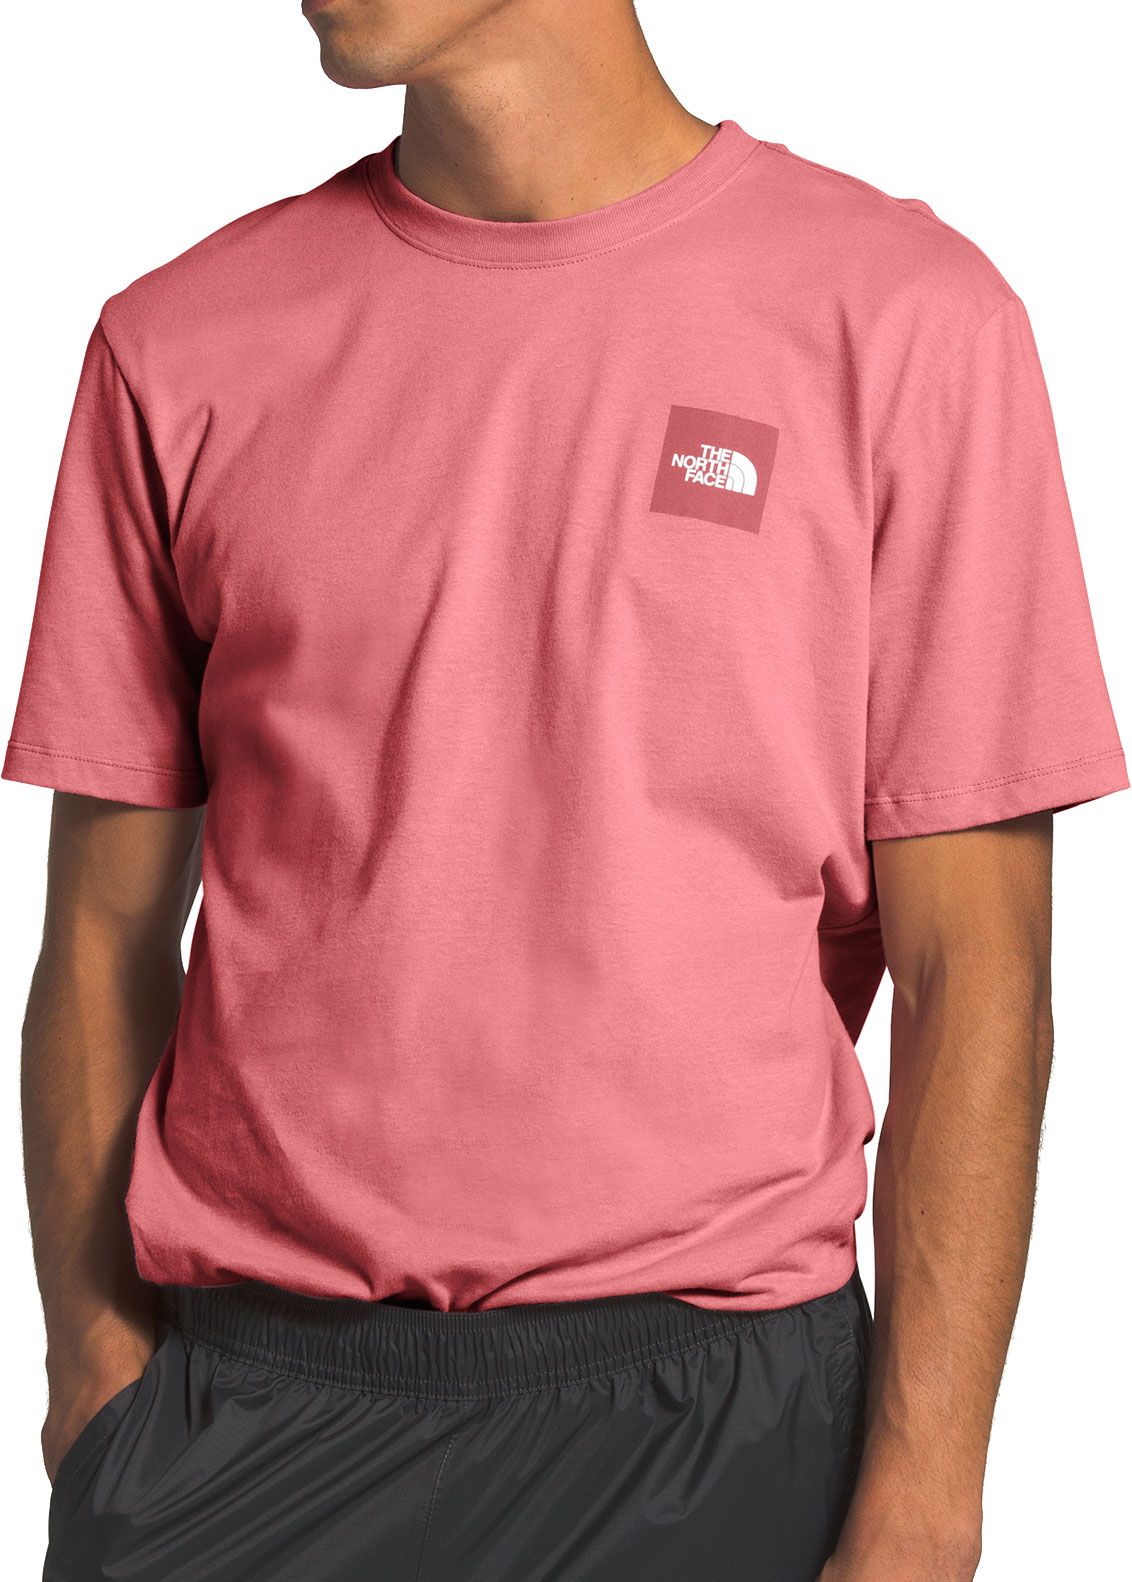 pink north face t shirt mens